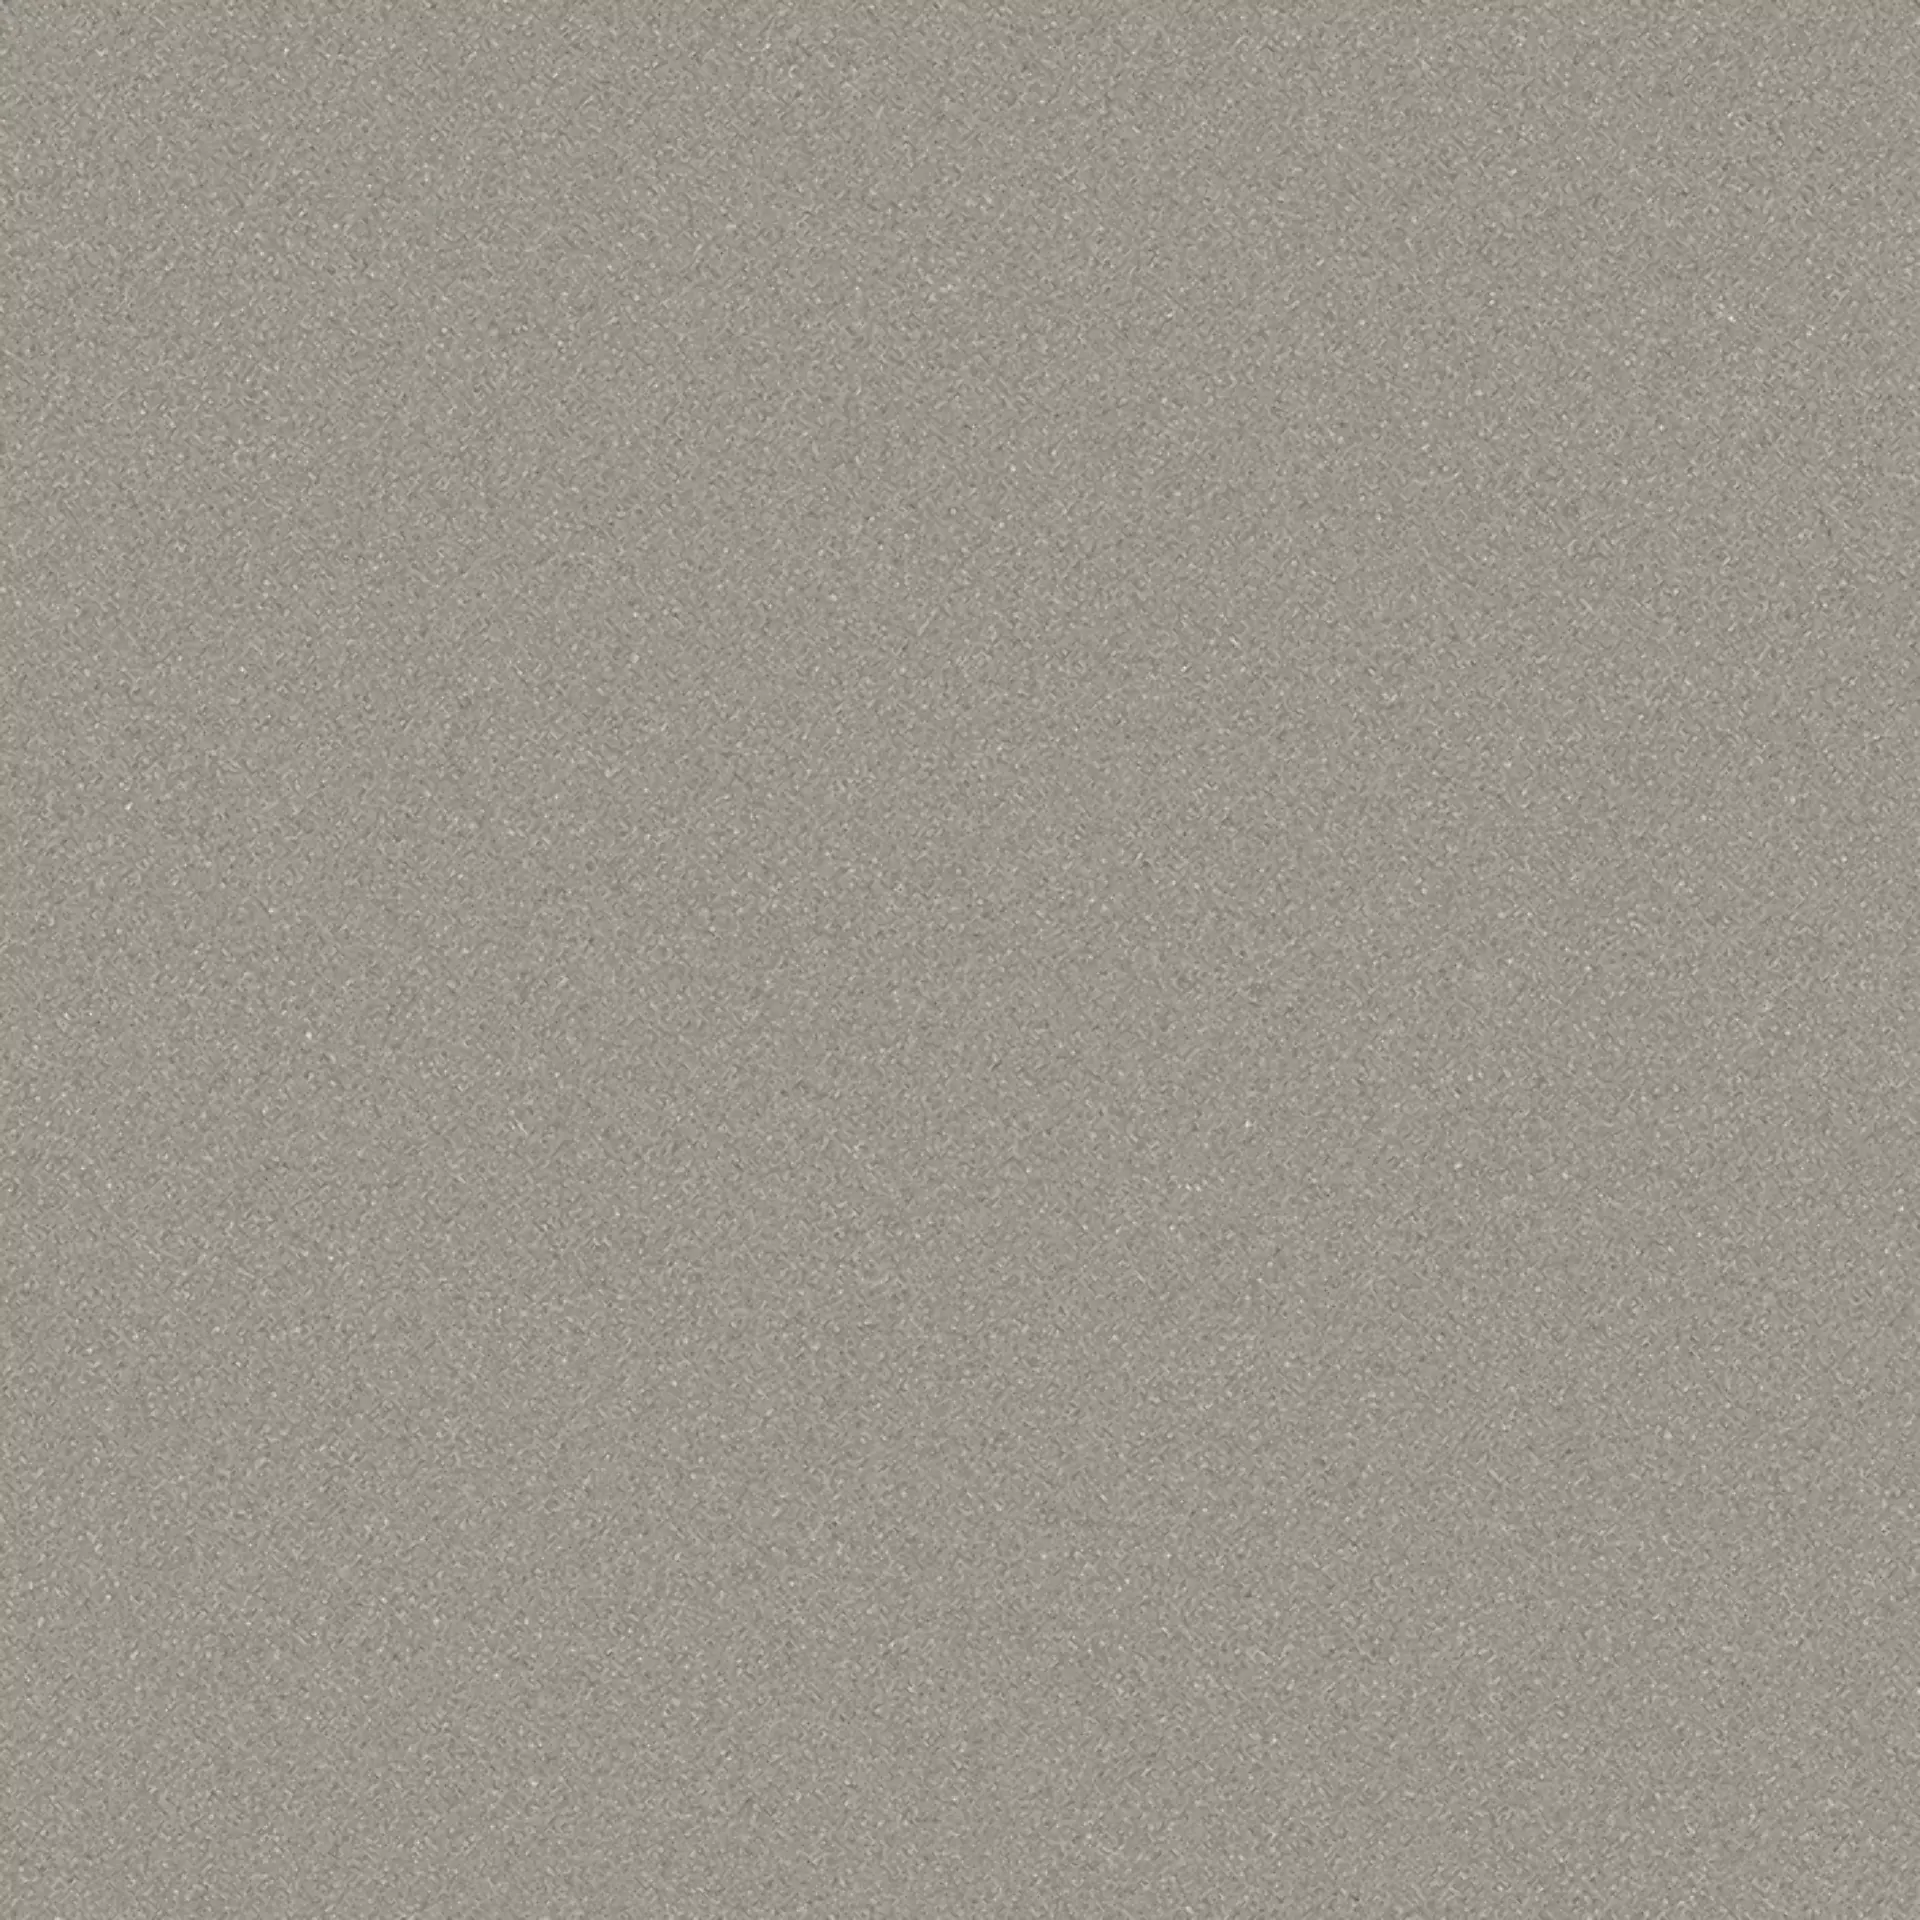 Wandfliese,Bodenfliese Villeroy & Boch Pure Line 2.0 Cement Grey Matt Cement Grey 2753-UL61 matt 60x60cm rektifiziert 12mm